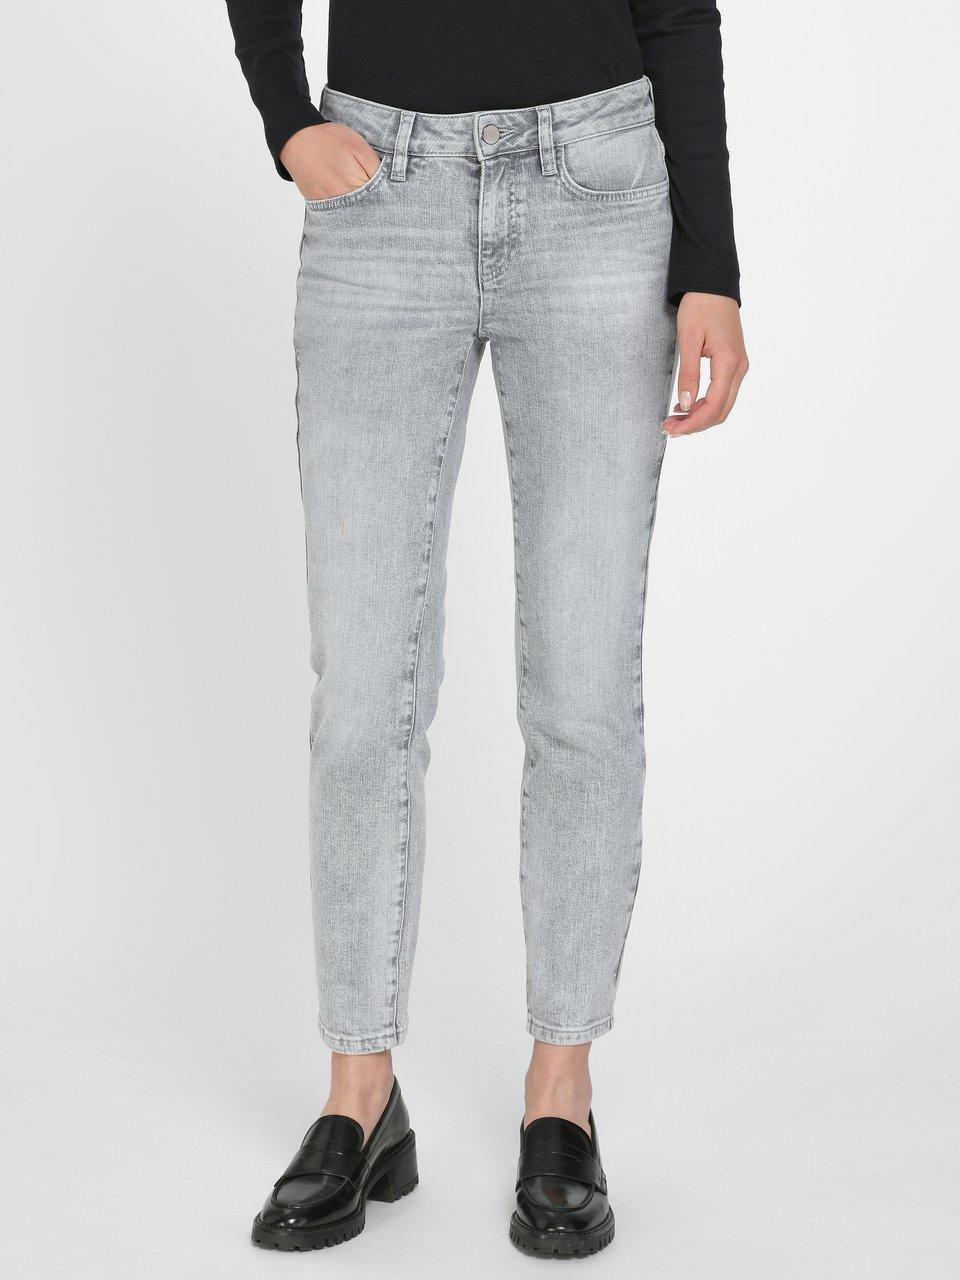 Fadenmeister Berlin - Enkellange jeans in five-pocketsmodel